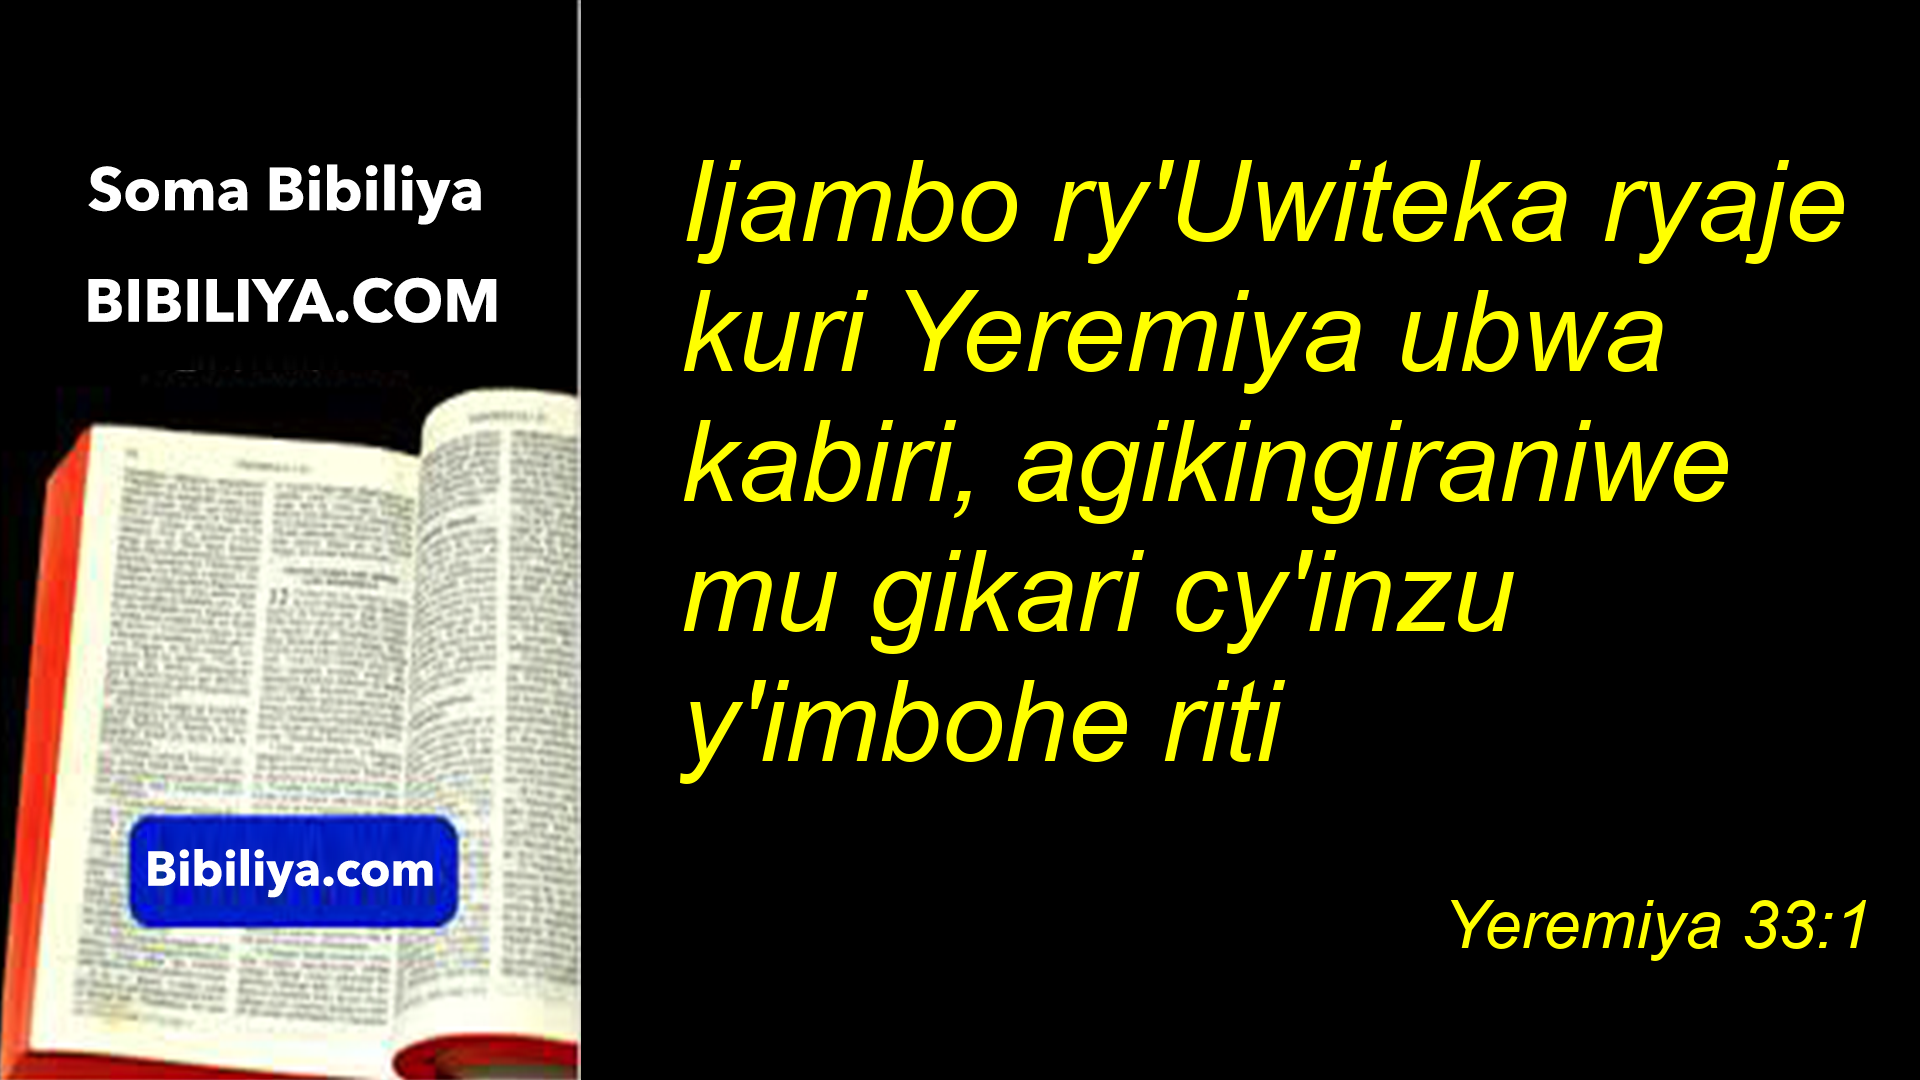 DAY 33:INGARUKA ZO KUTAMENYA NO KUTUMVIRA IJAMBO RY'IMANA BY Pst Aaron  RUHIMBYA. 